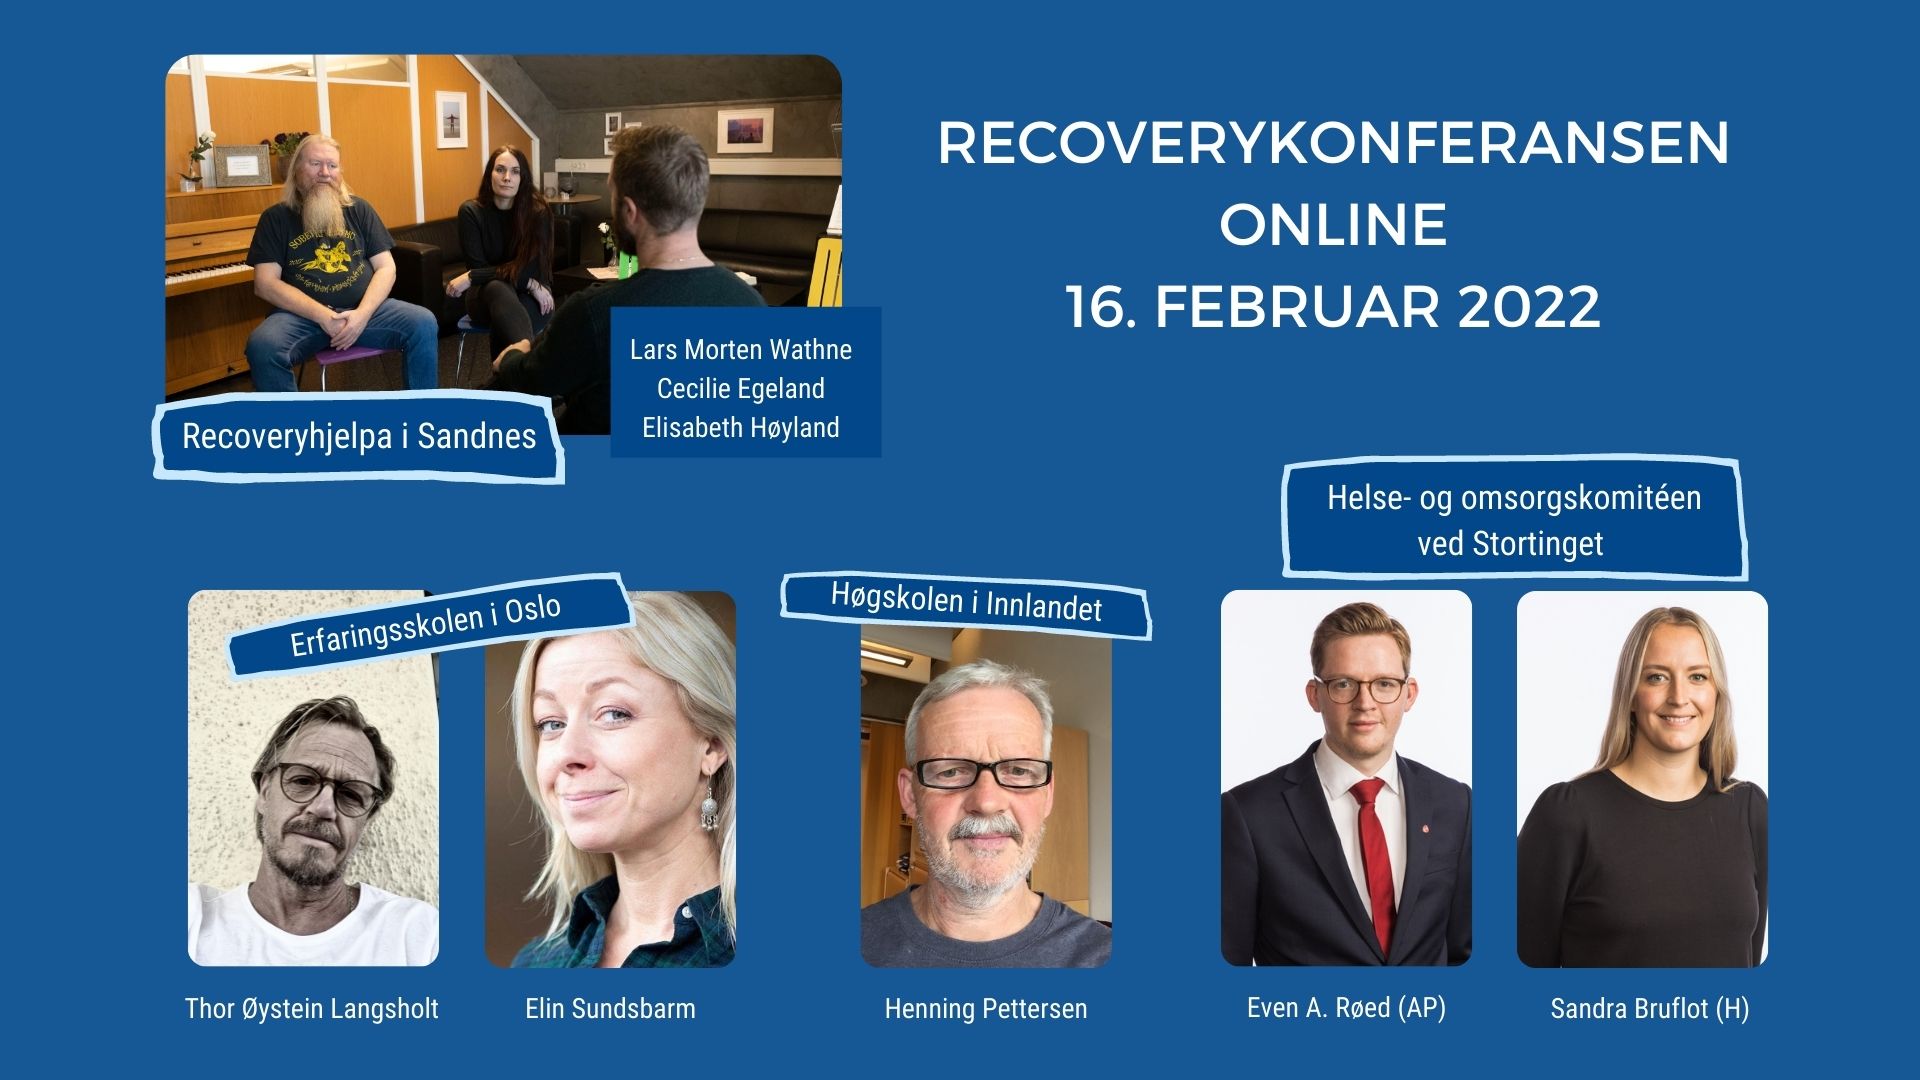 Plakat med tekst og bilder over de som skal holde innlegg på recoverykonferansen online